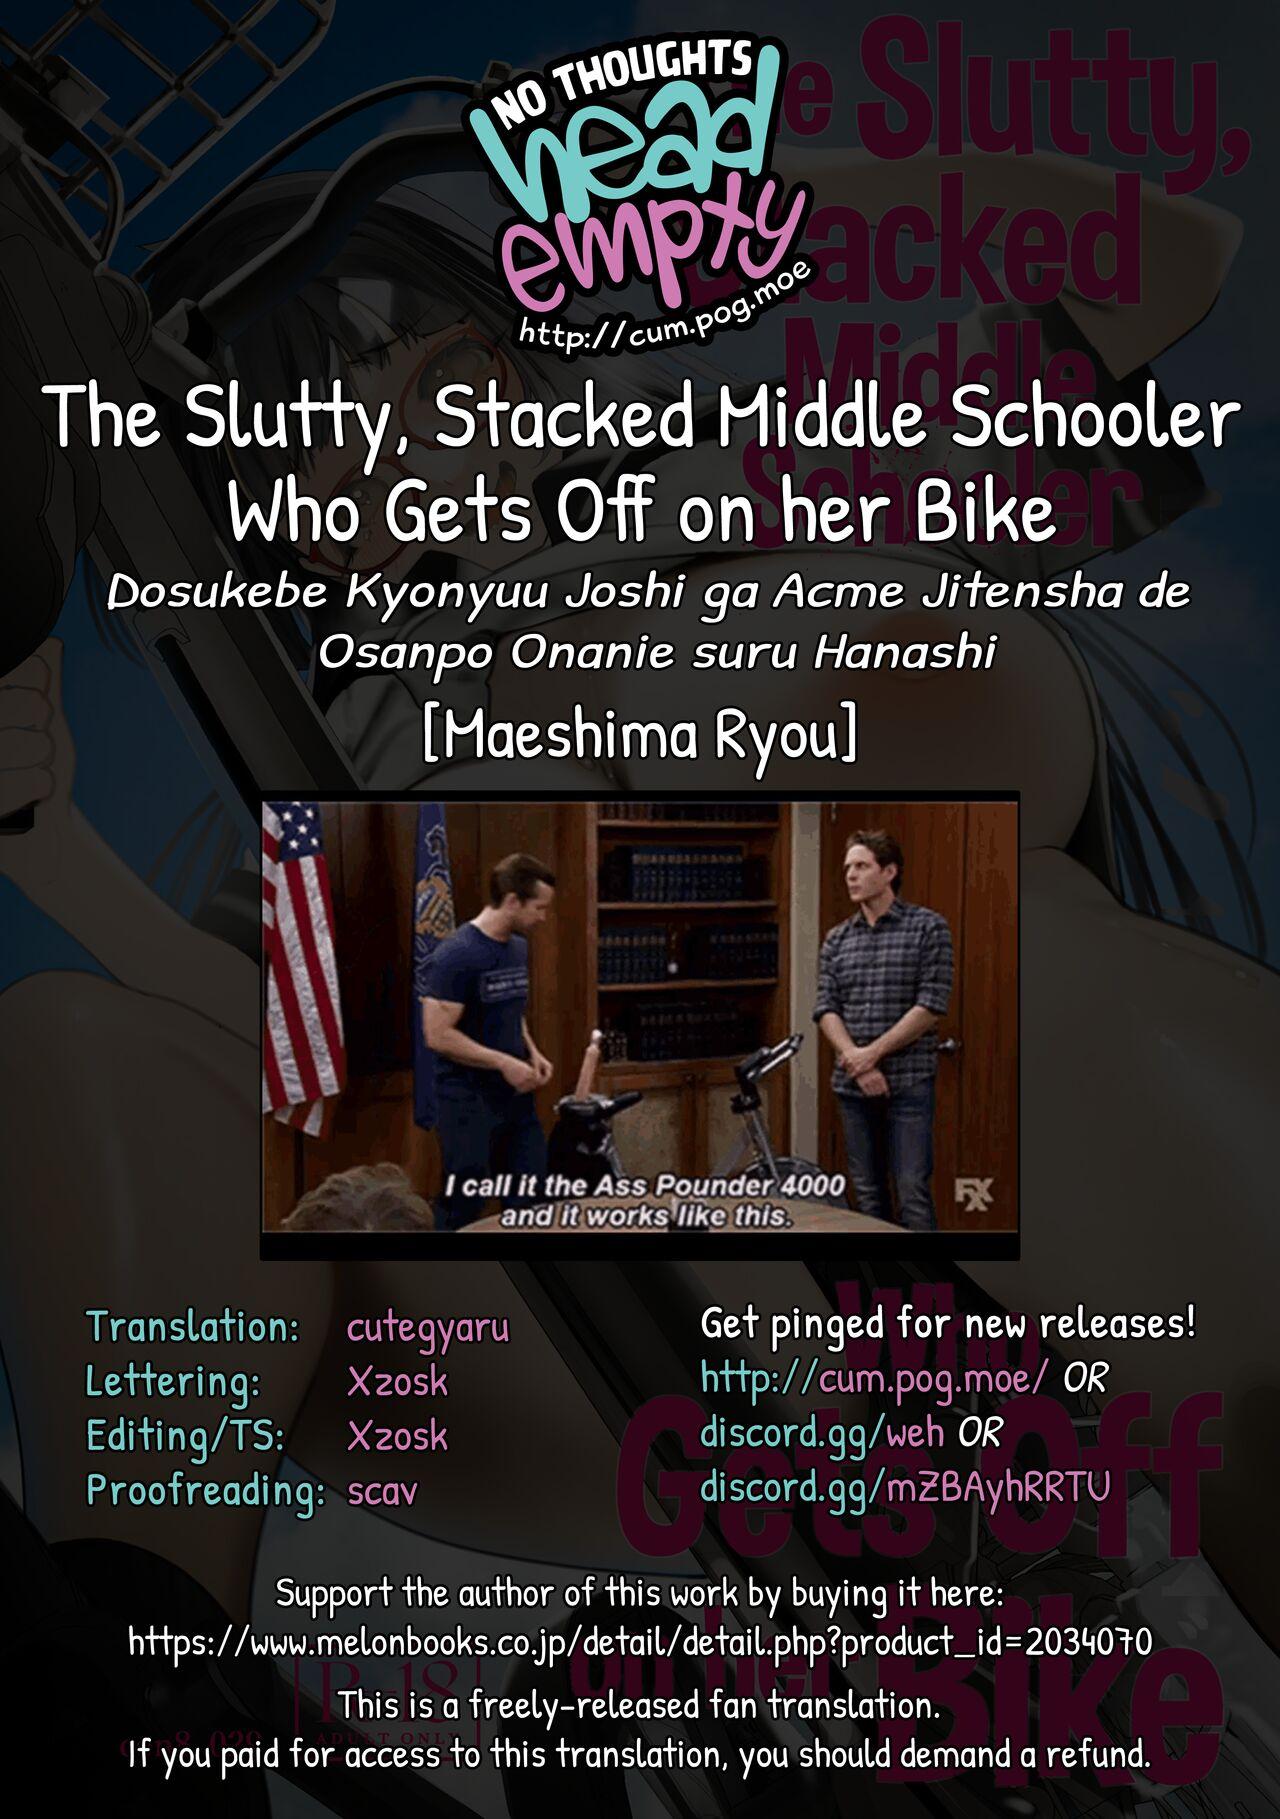 Dosukebe Kyonyuu Joshi ga Acme Jitensha de Osanpo Onanie suru Hanashi | The Slutty, Stacked Middle Schooler Who Gets Off on her Bike 57